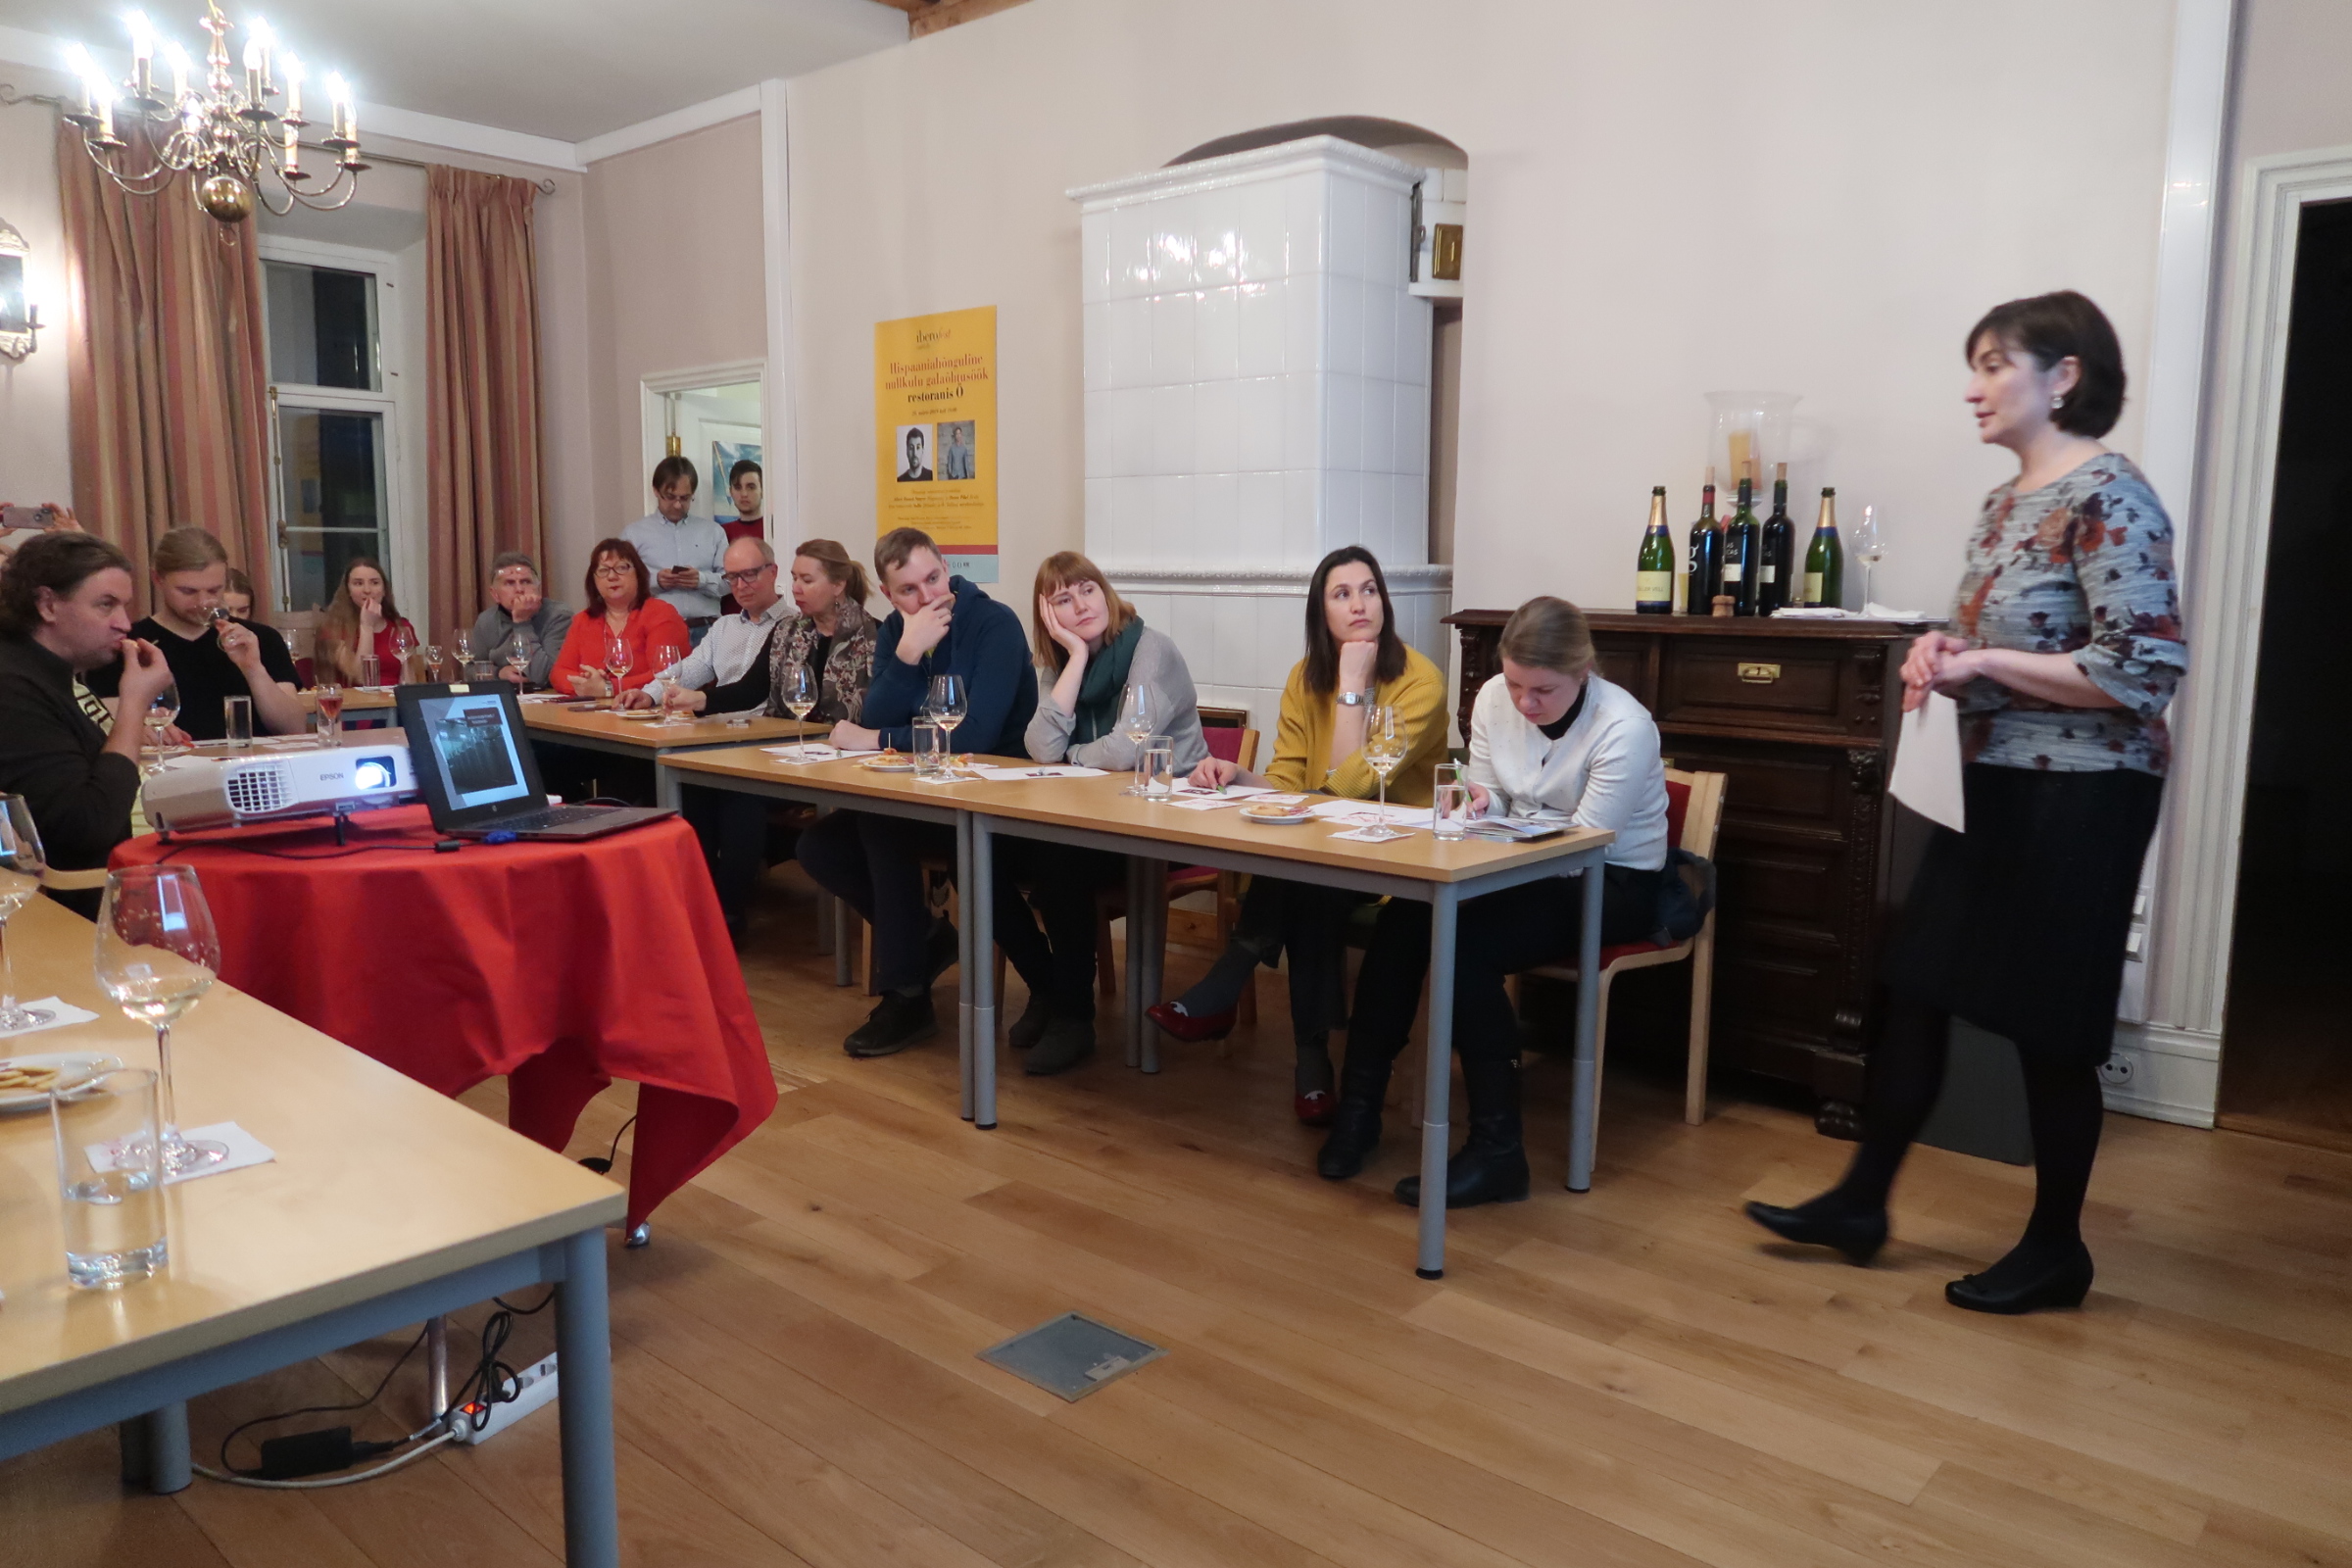 Veinitähestik: Põhja-Hispaania | Iberofest 2019